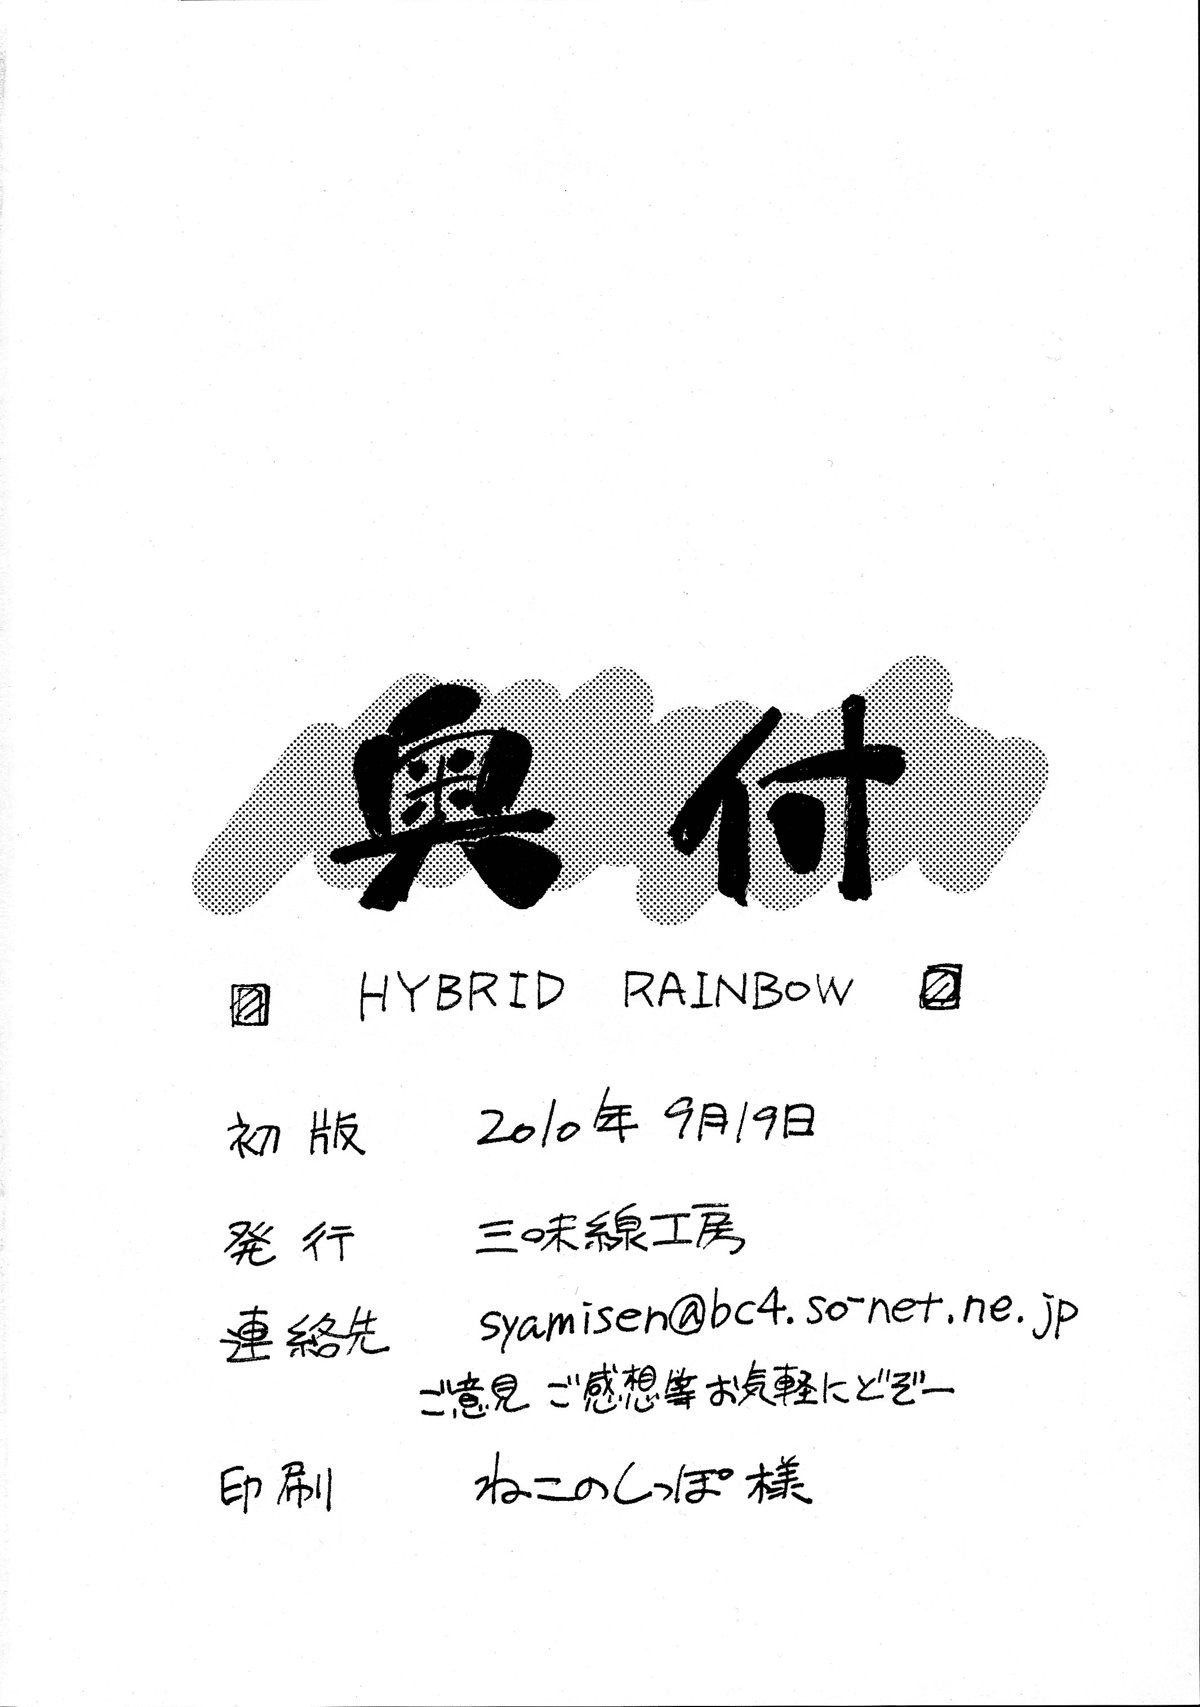 HYBRID RAINBOW - 20